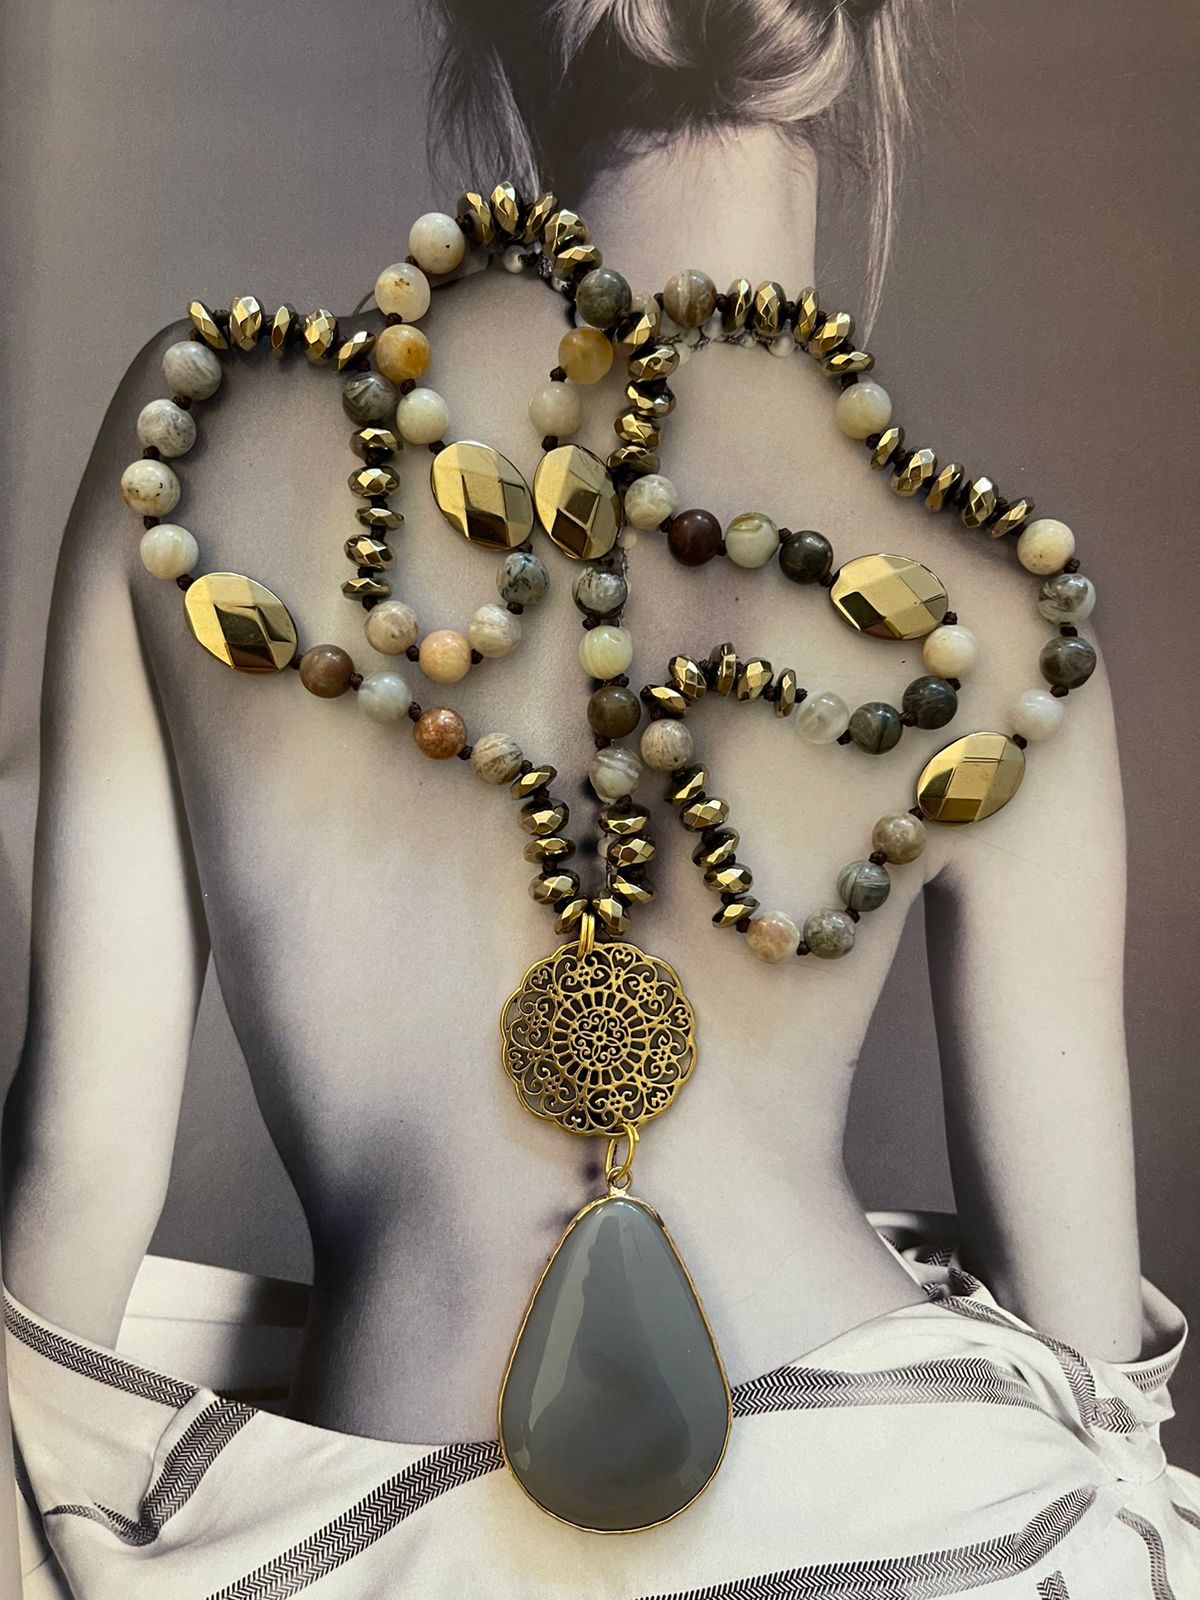 Collar Hippie Chic largo de piedras Agatas y cristales en tonos beige y dorados.